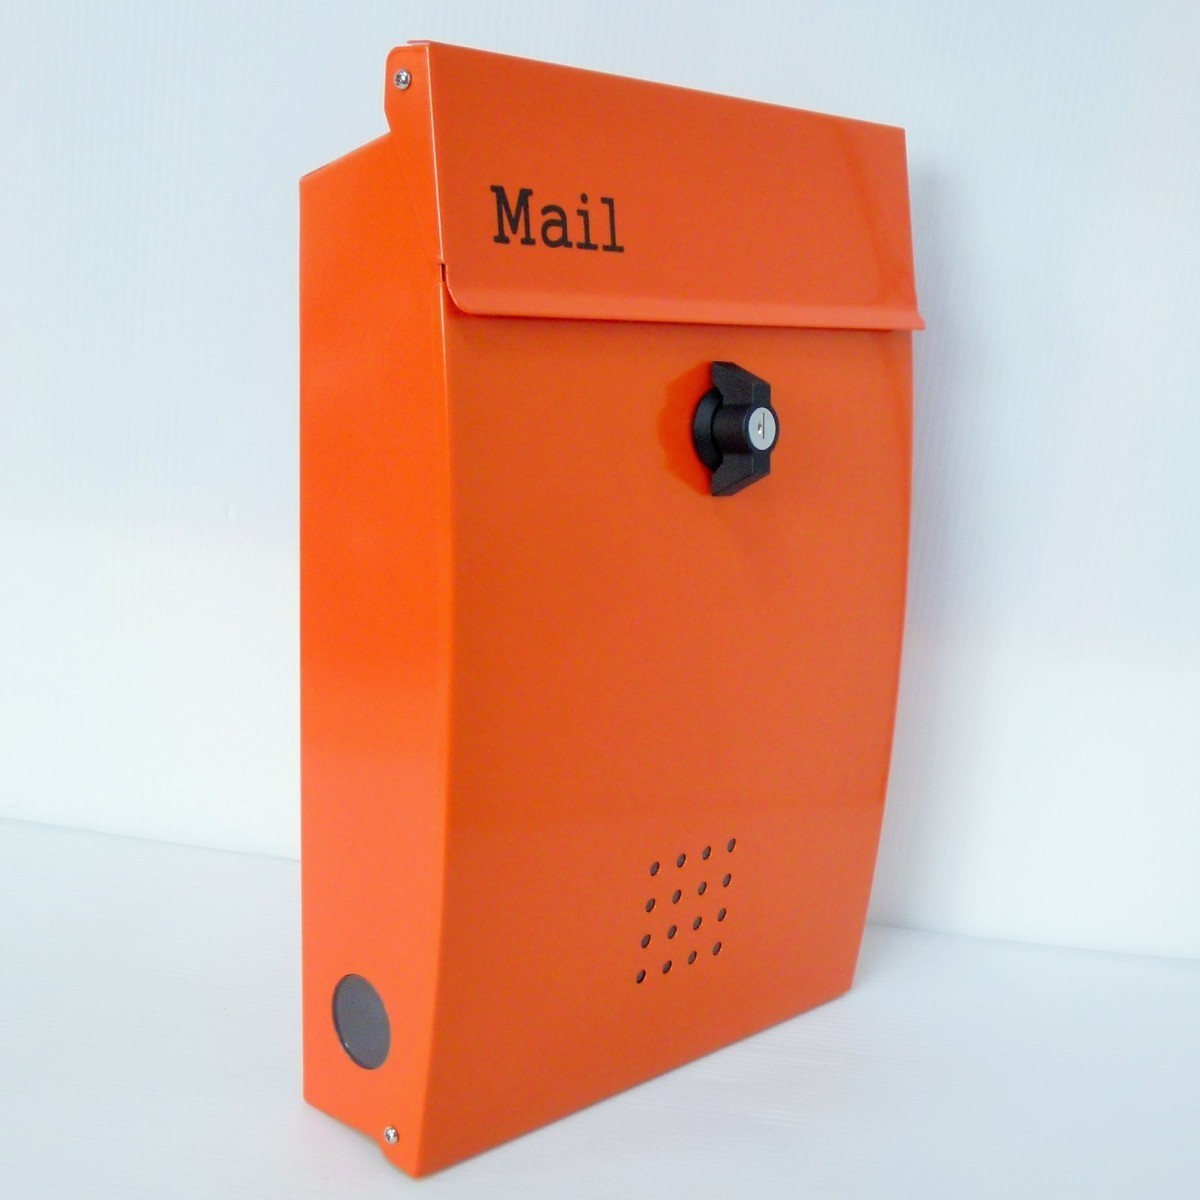 郵便ポスト郵便受けおしゃれかわいい人気北欧モダンデザインメールボックス壁掛けプレミアムステンレスオレンジ色ポストpm134